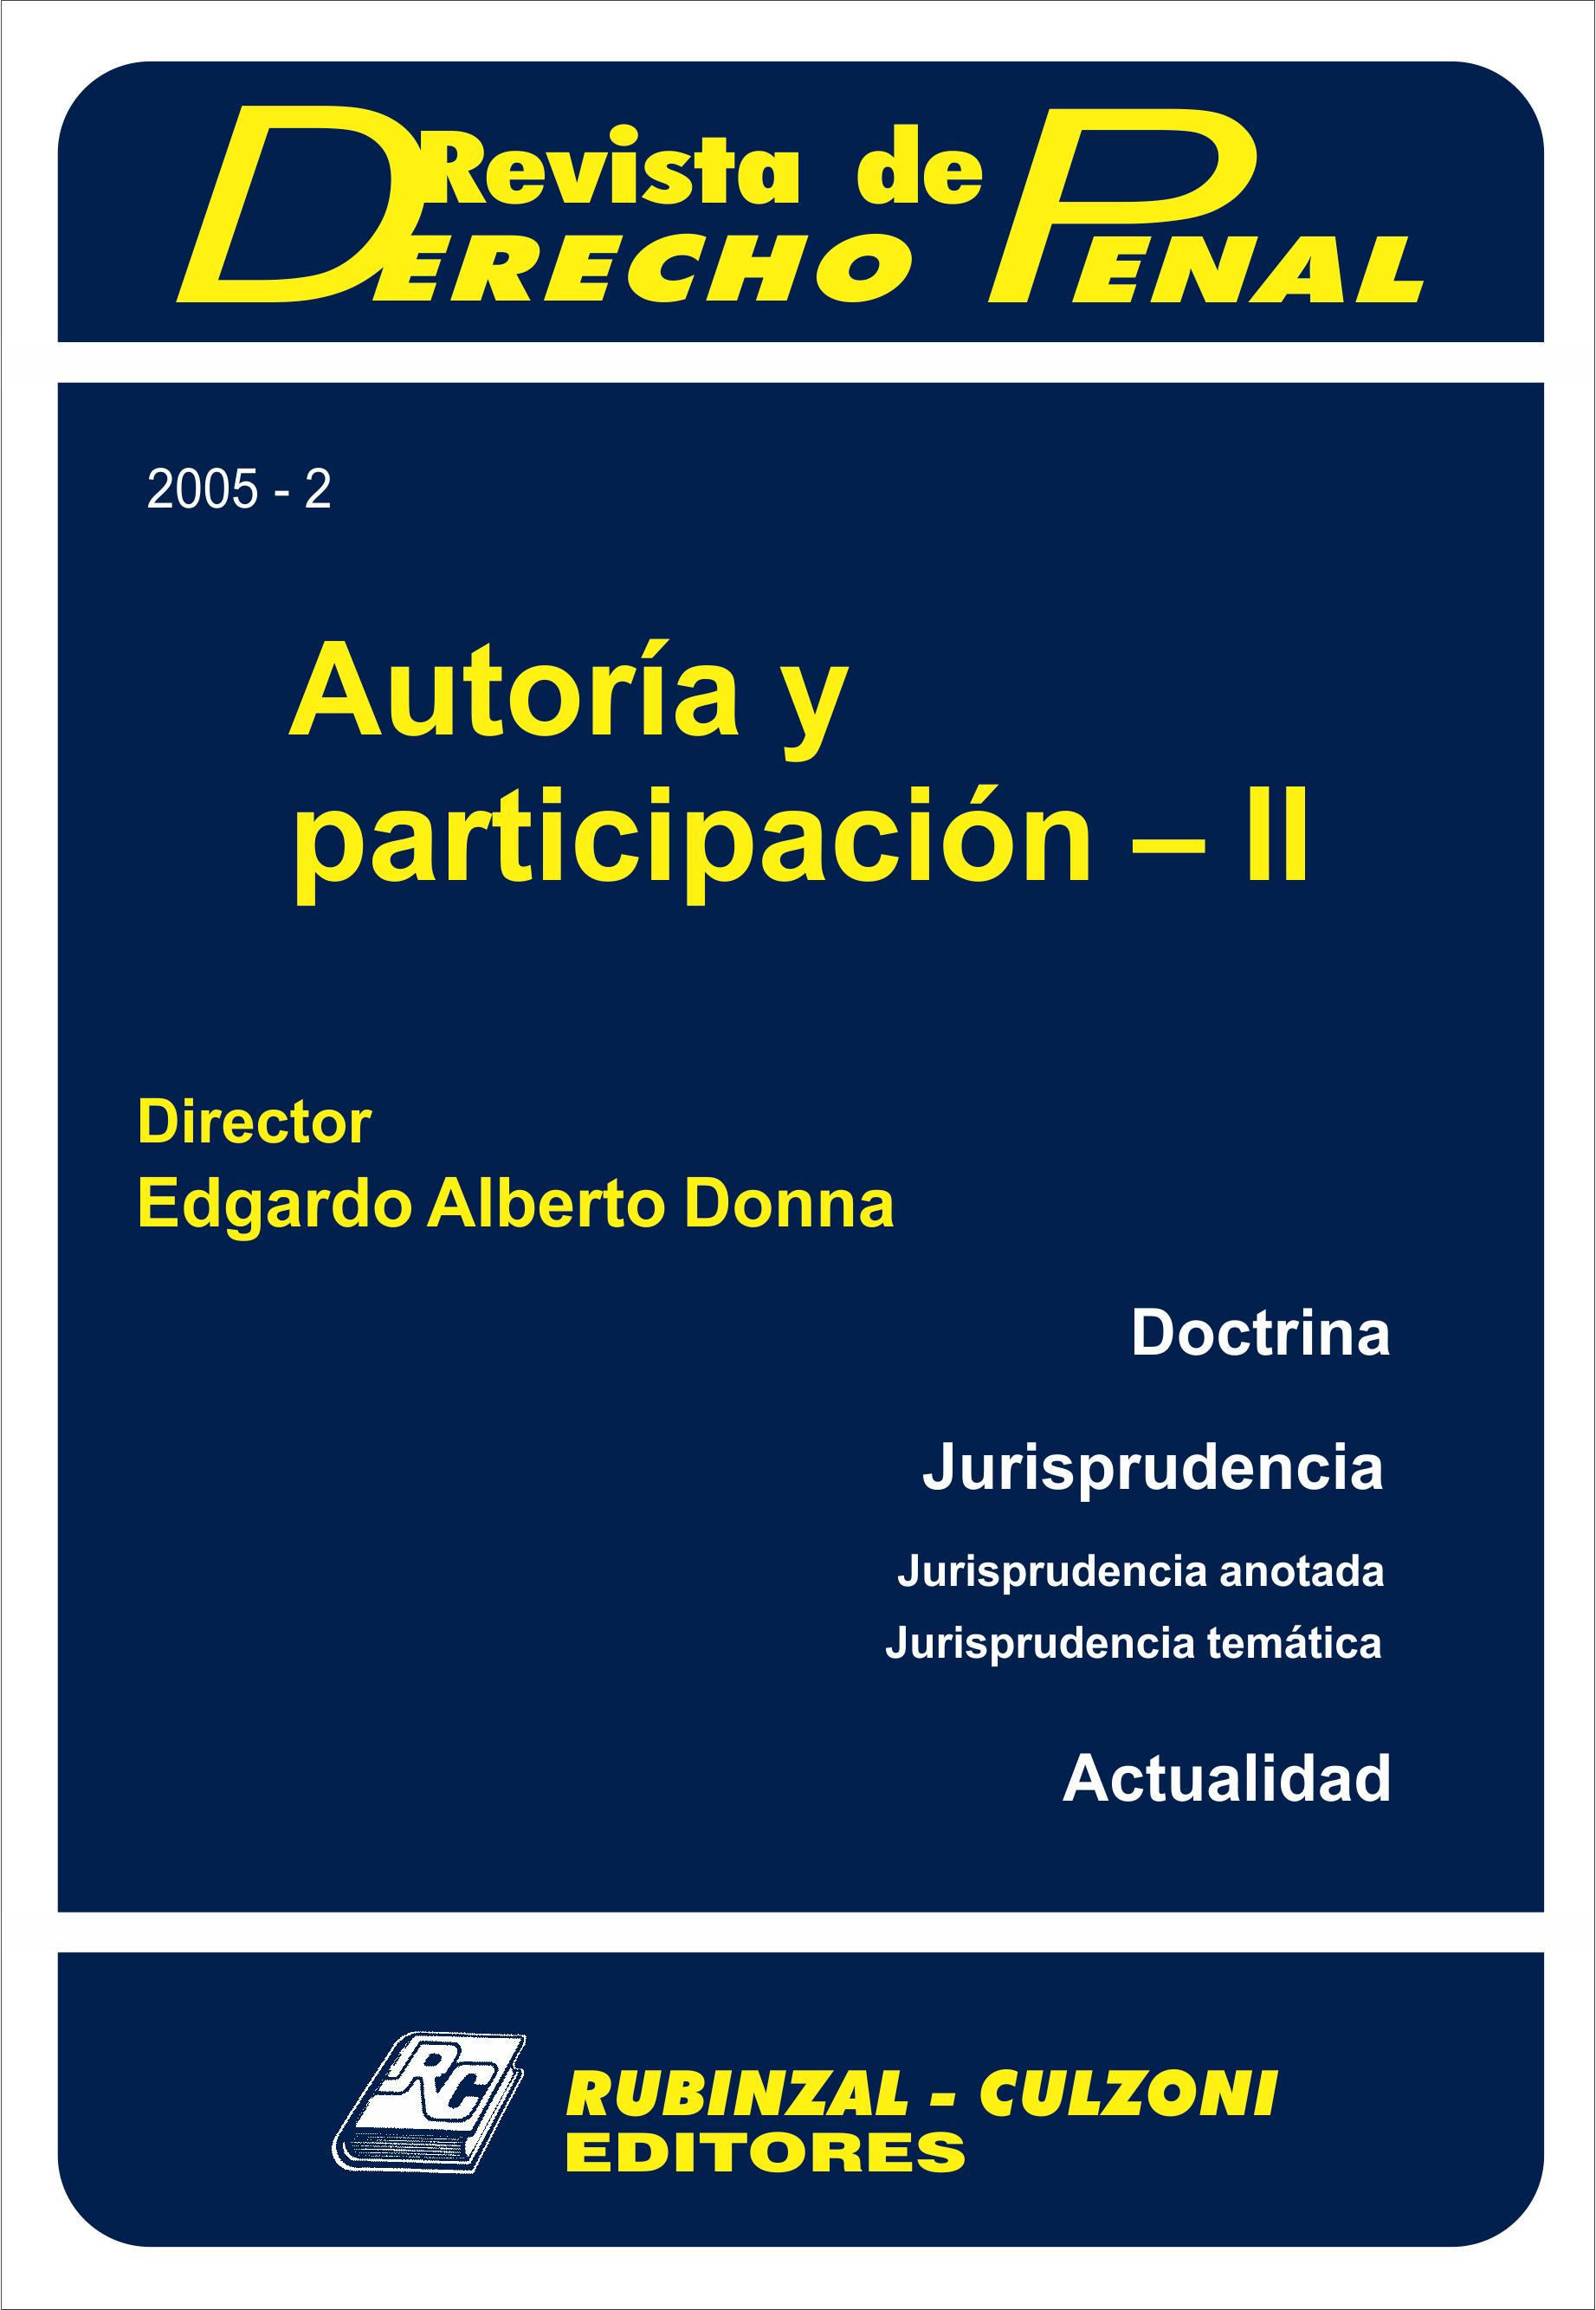 Revista de Derecho Penal - Autoría y participación - II.